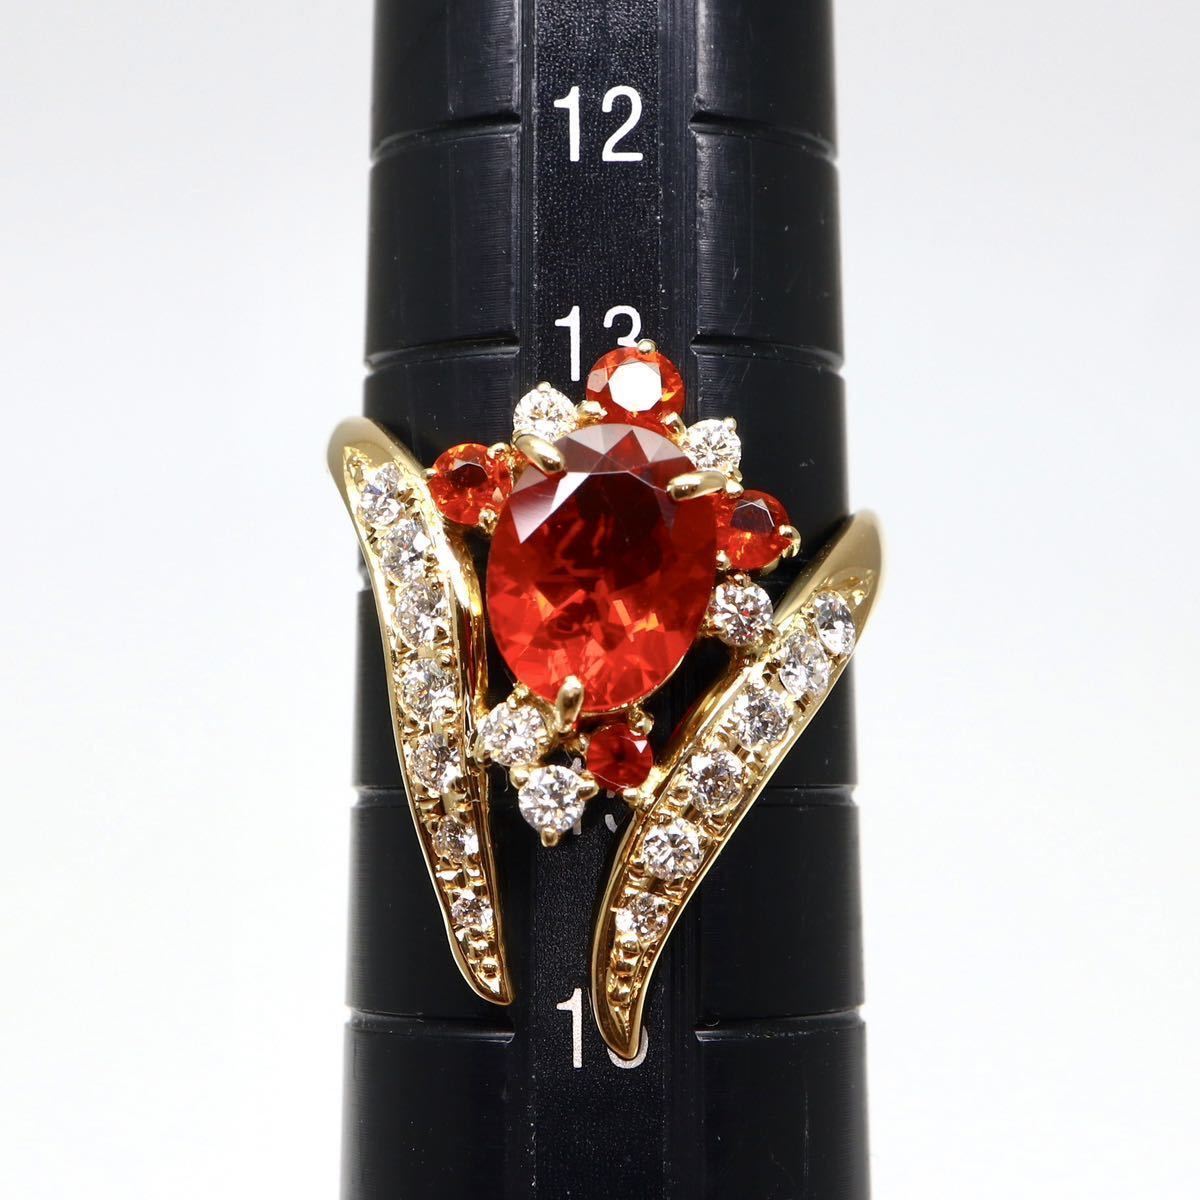 新品仕上げ済み!!豪華!!◆K18(750) 天然ダイヤモンド/天然オパールリング◆J 約5.0g 14号 opal ring 指輪 jewelry ジュエリー ring EC9/EC9_画像9